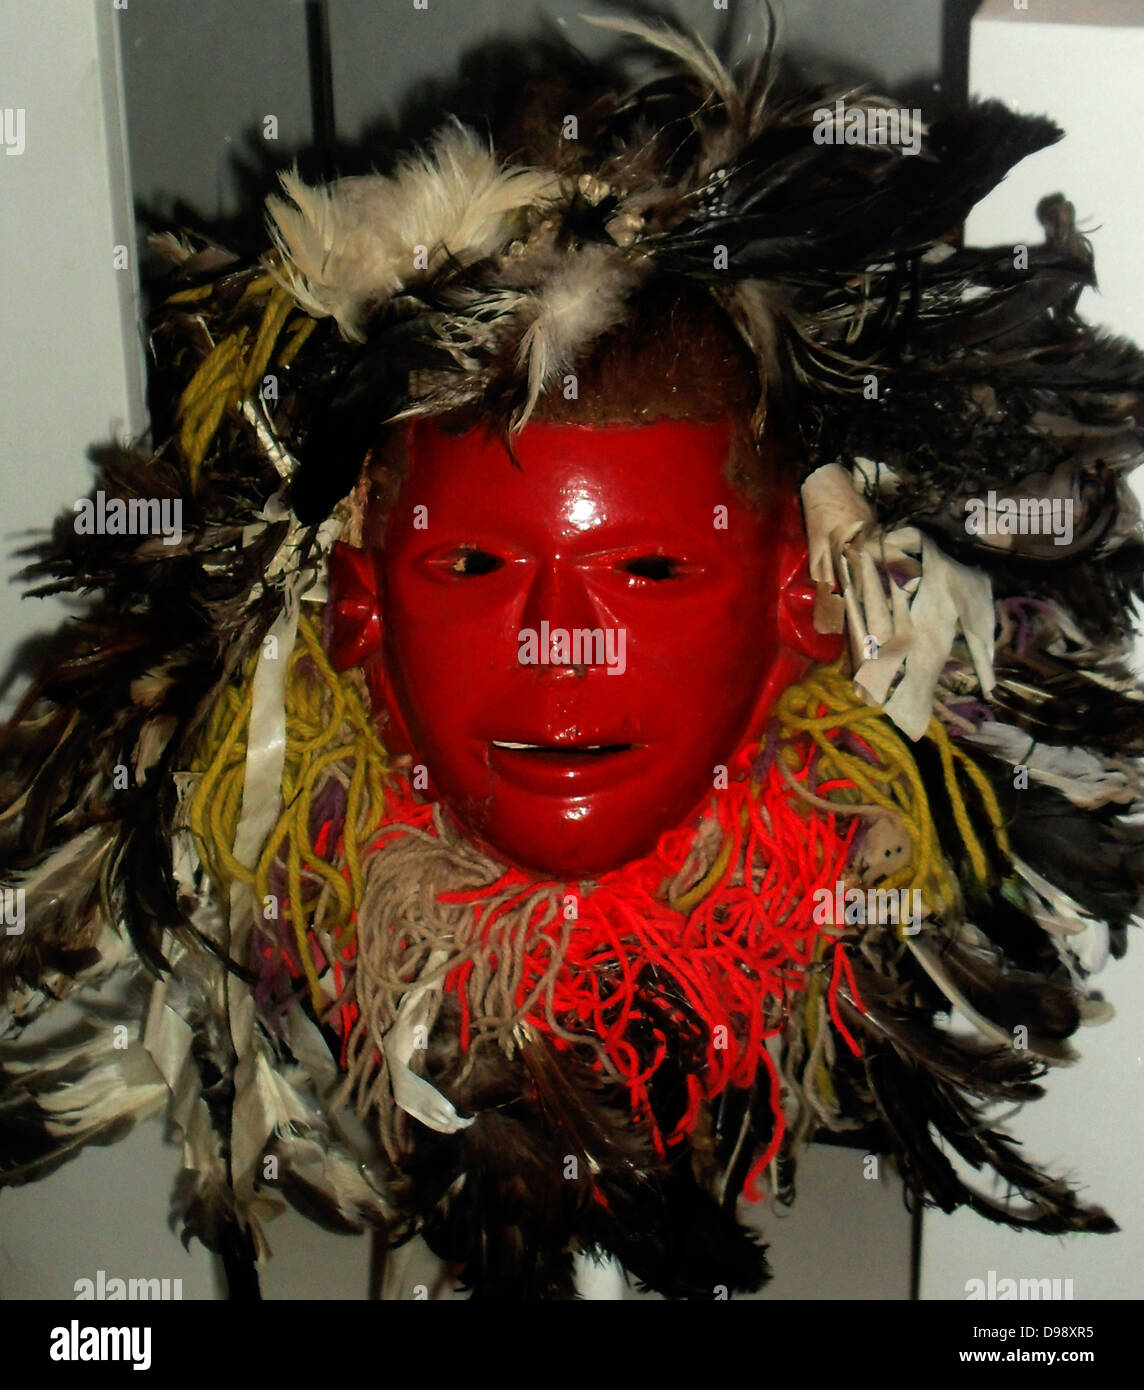 A finales del siglo XX, madera, pintura, plumas, metal y lana Chewa máscara de la población en Malawi. Con el rostro rojo máscara representa el conocido jefe de un grupo de vecinos. En masquerade Chewa forasteros son clasificados como "criaturas del bush" como los animales salvajes. Los Chewa son un pueblo de África Central y Meridional. Los Chewa están estrechamente relacionados con la gente en las regiones circundantes como el Tumbuka y Nsenga. Históricamente están relacionados también con la Bemba, con quienes comparten un origen similar en la República Democrática del Congo. Foto de stock